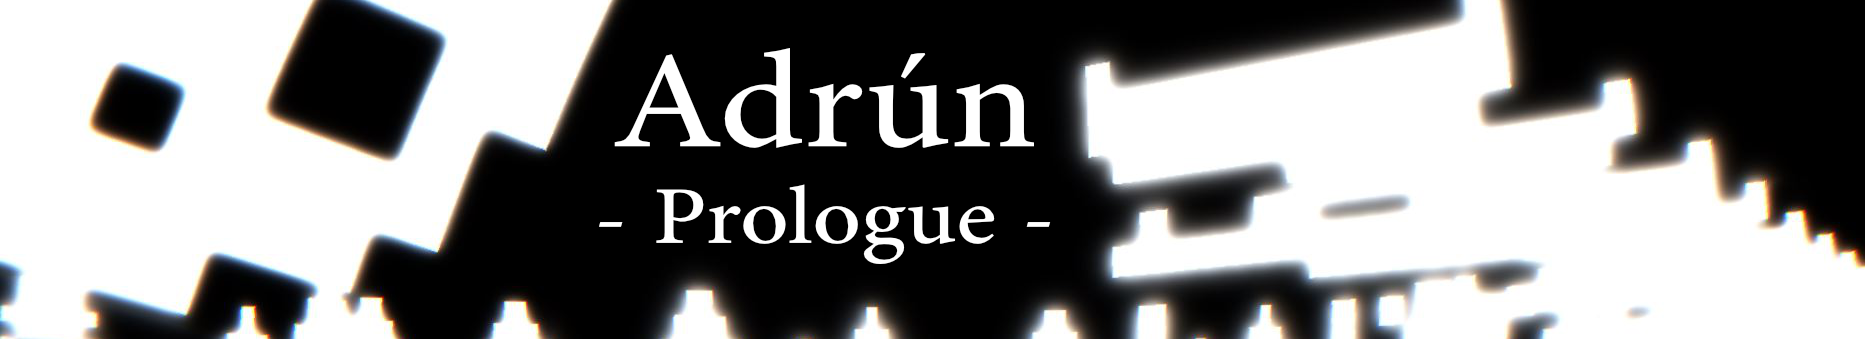 Adrún - Prologue